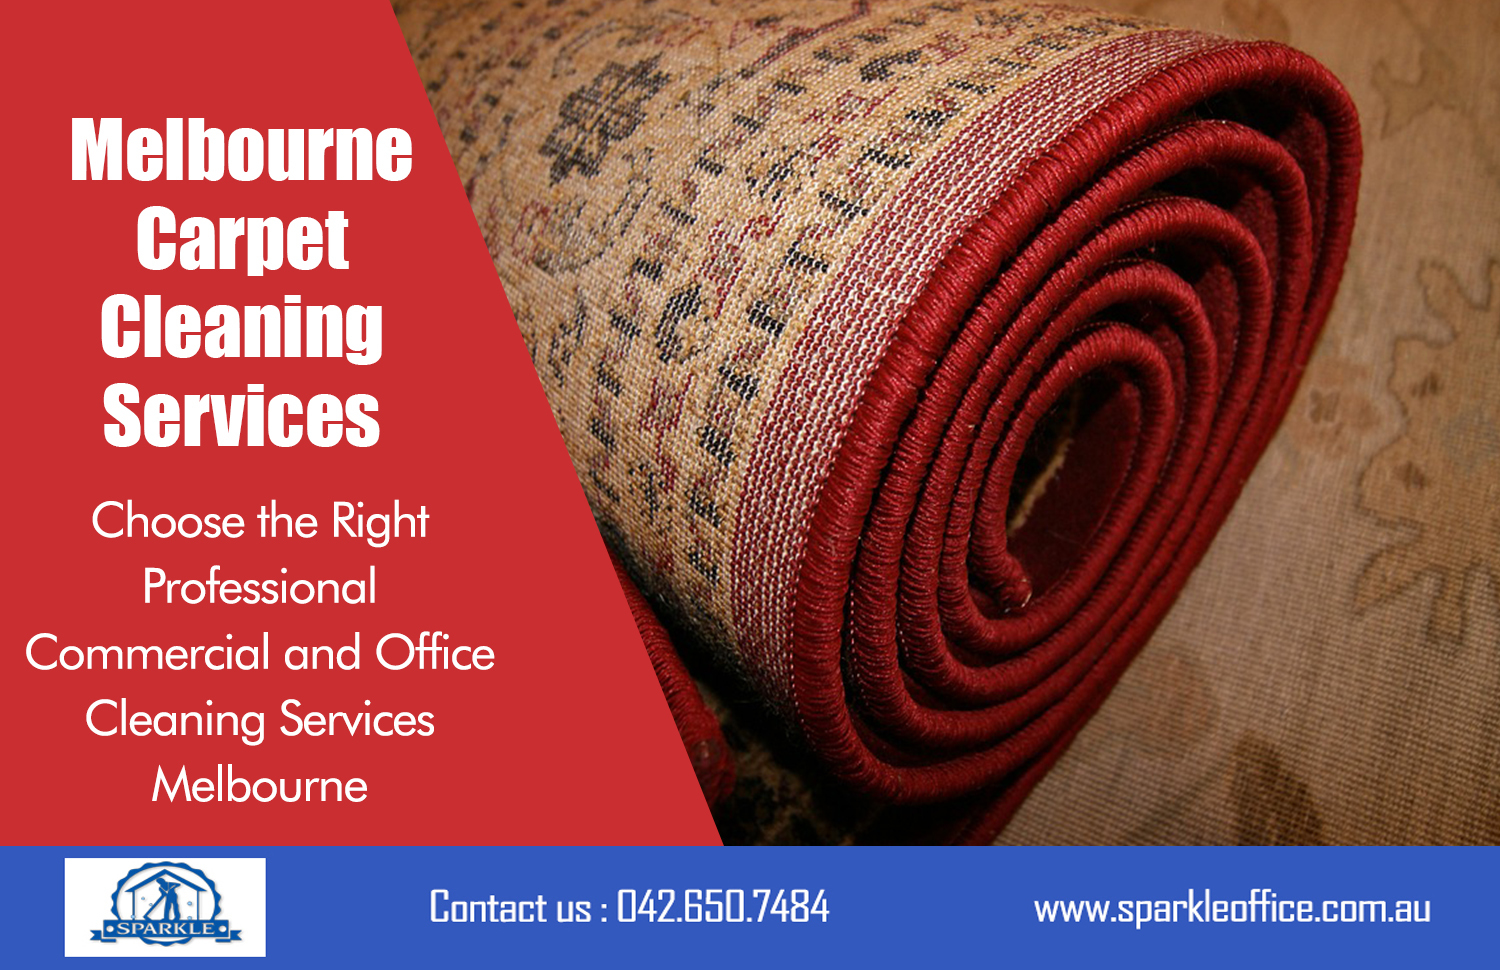 Melbourne Carpet Cleaning Services| Call Us - 042 650 7484  | sparkleoffice.com.au